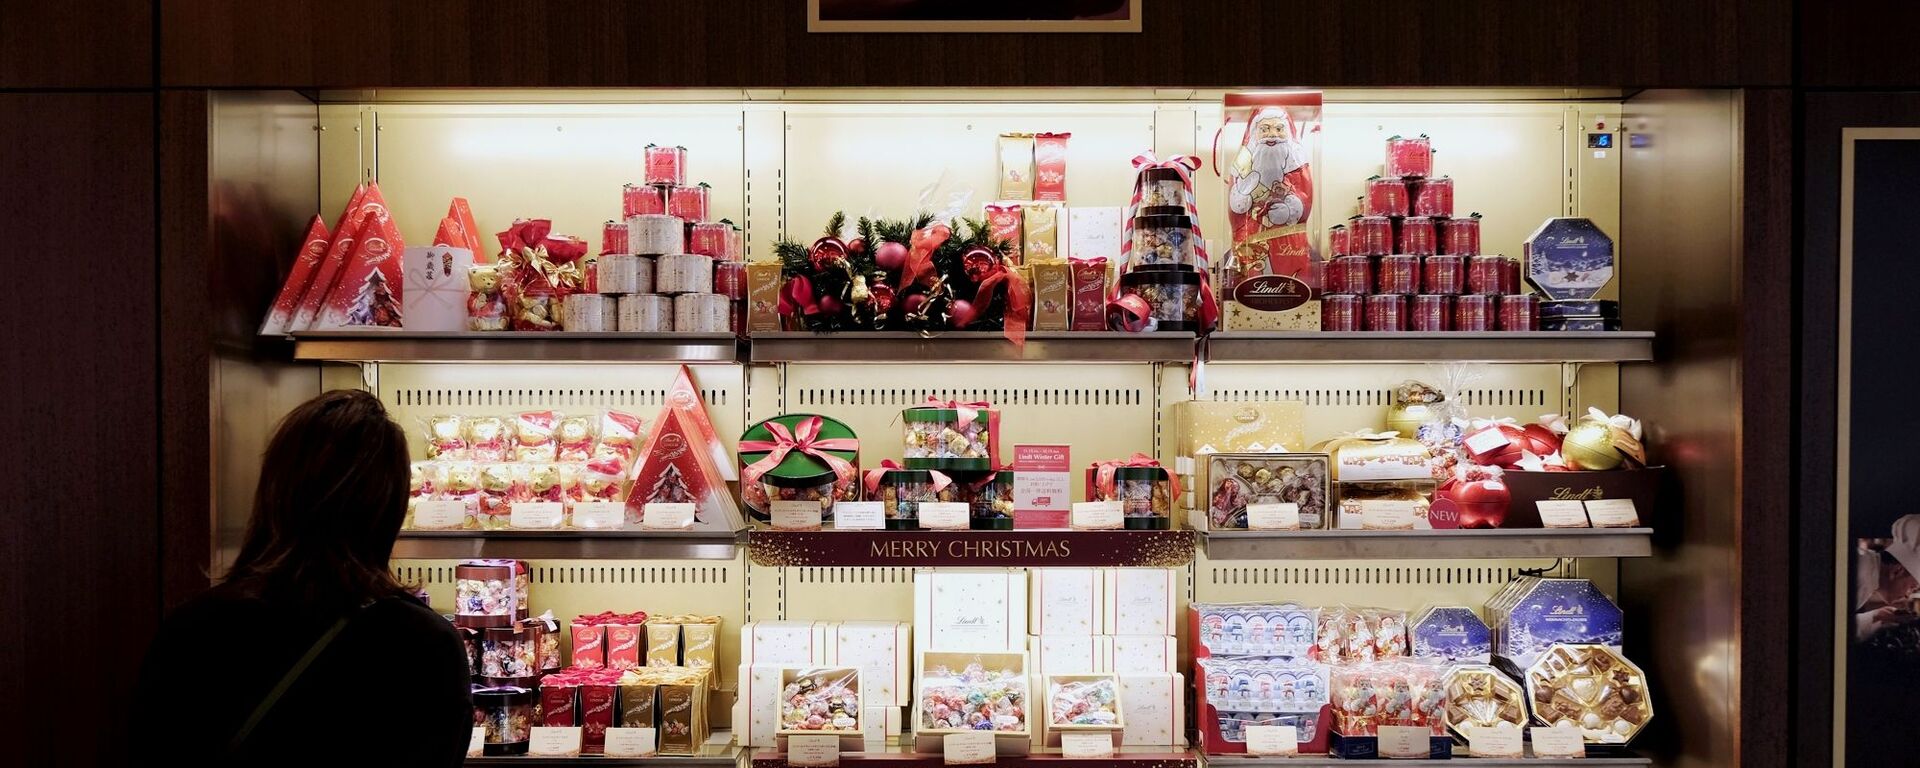 クリスマス用のプレゼントが並ぶ東京の店舗 - Sputnik 日本, 1920, 31.07.2020